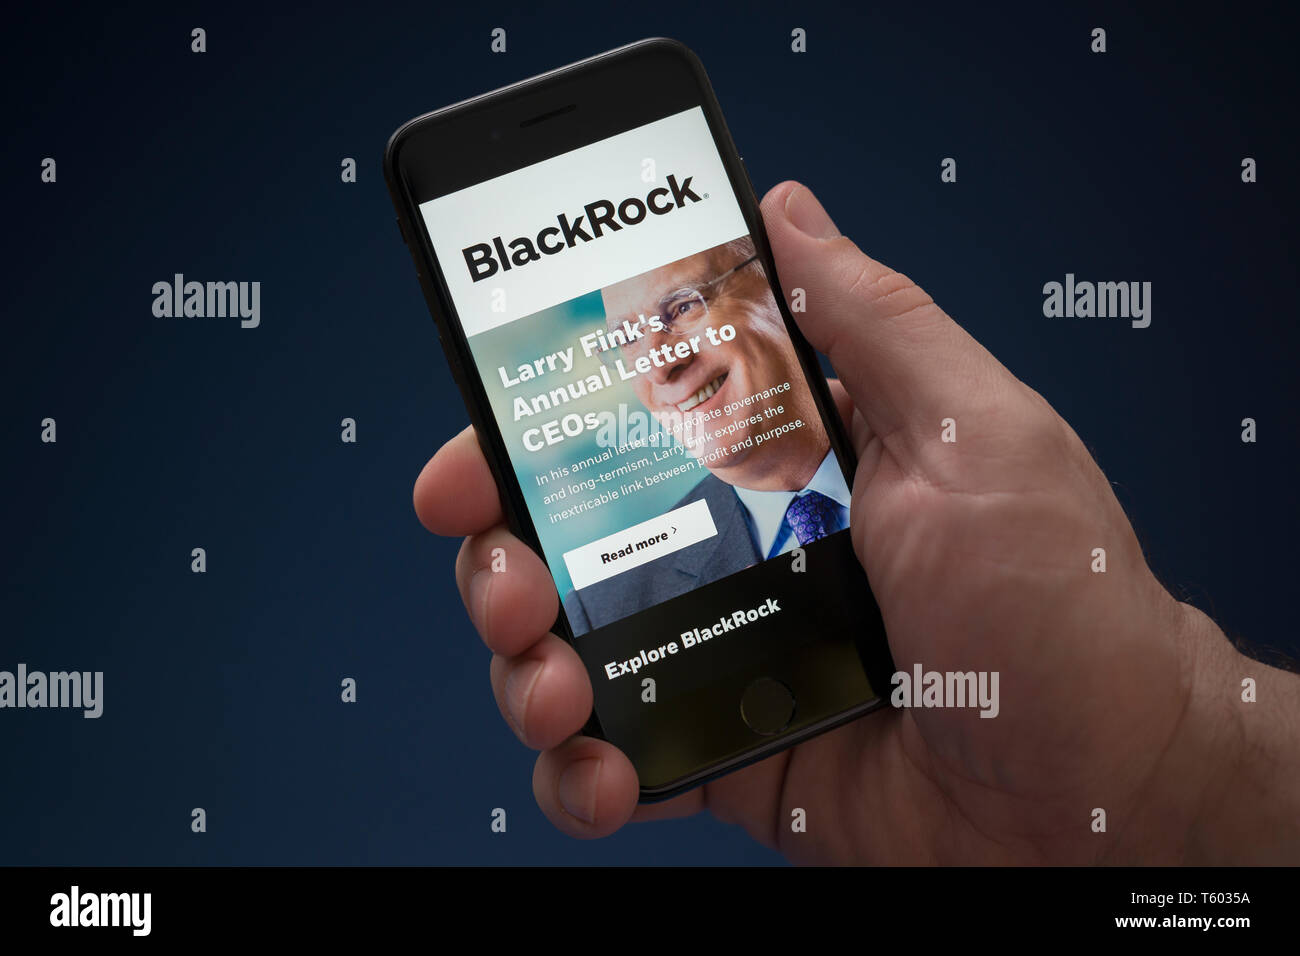 Un hombre mira el iPhone que muestra el logotipo de BlackRock (uso Editorial solamente). Foto de stock